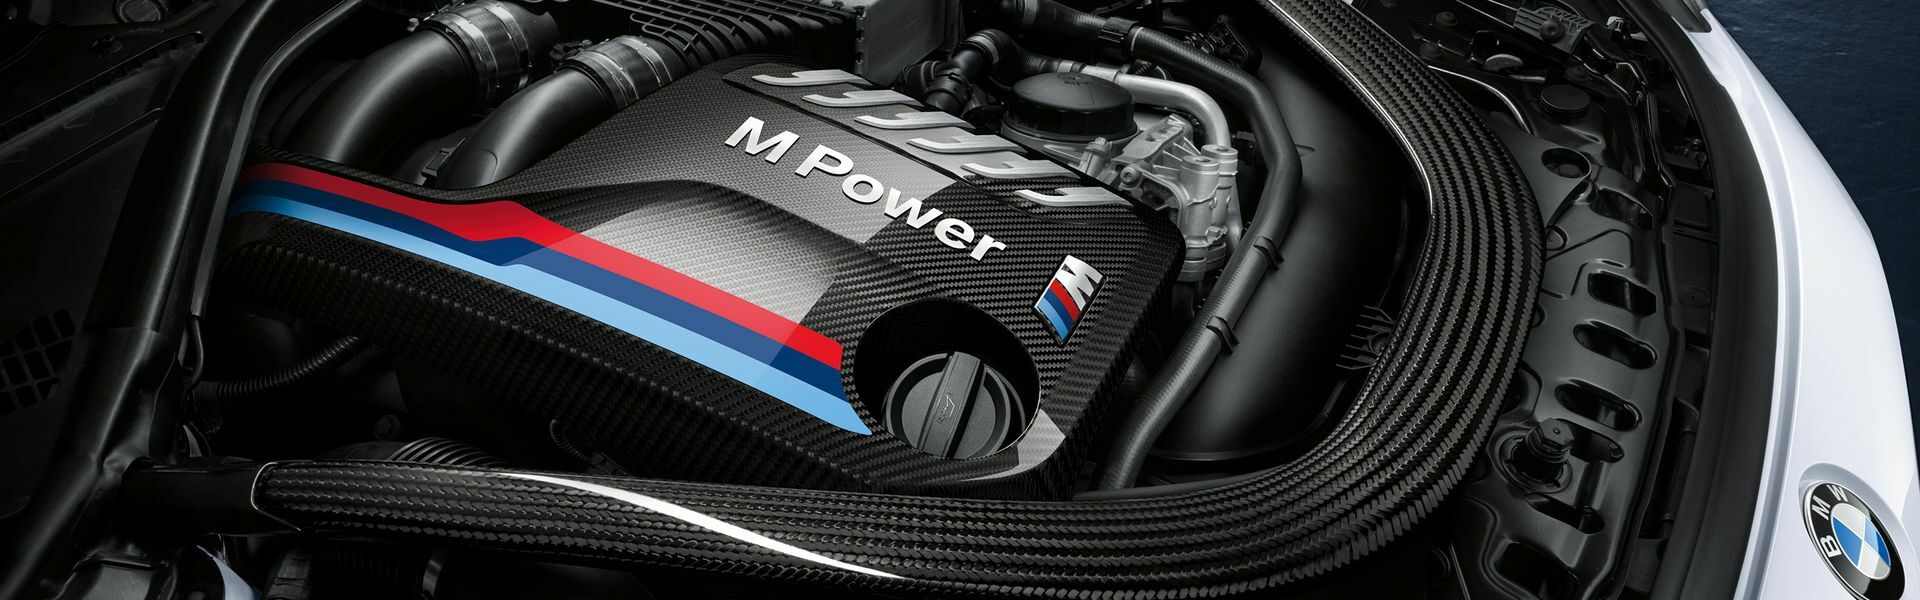 Zvýšení výkonu/ Softwarové úpravy/ Drobné performance díly pro automobil Porsche 911 Speedster